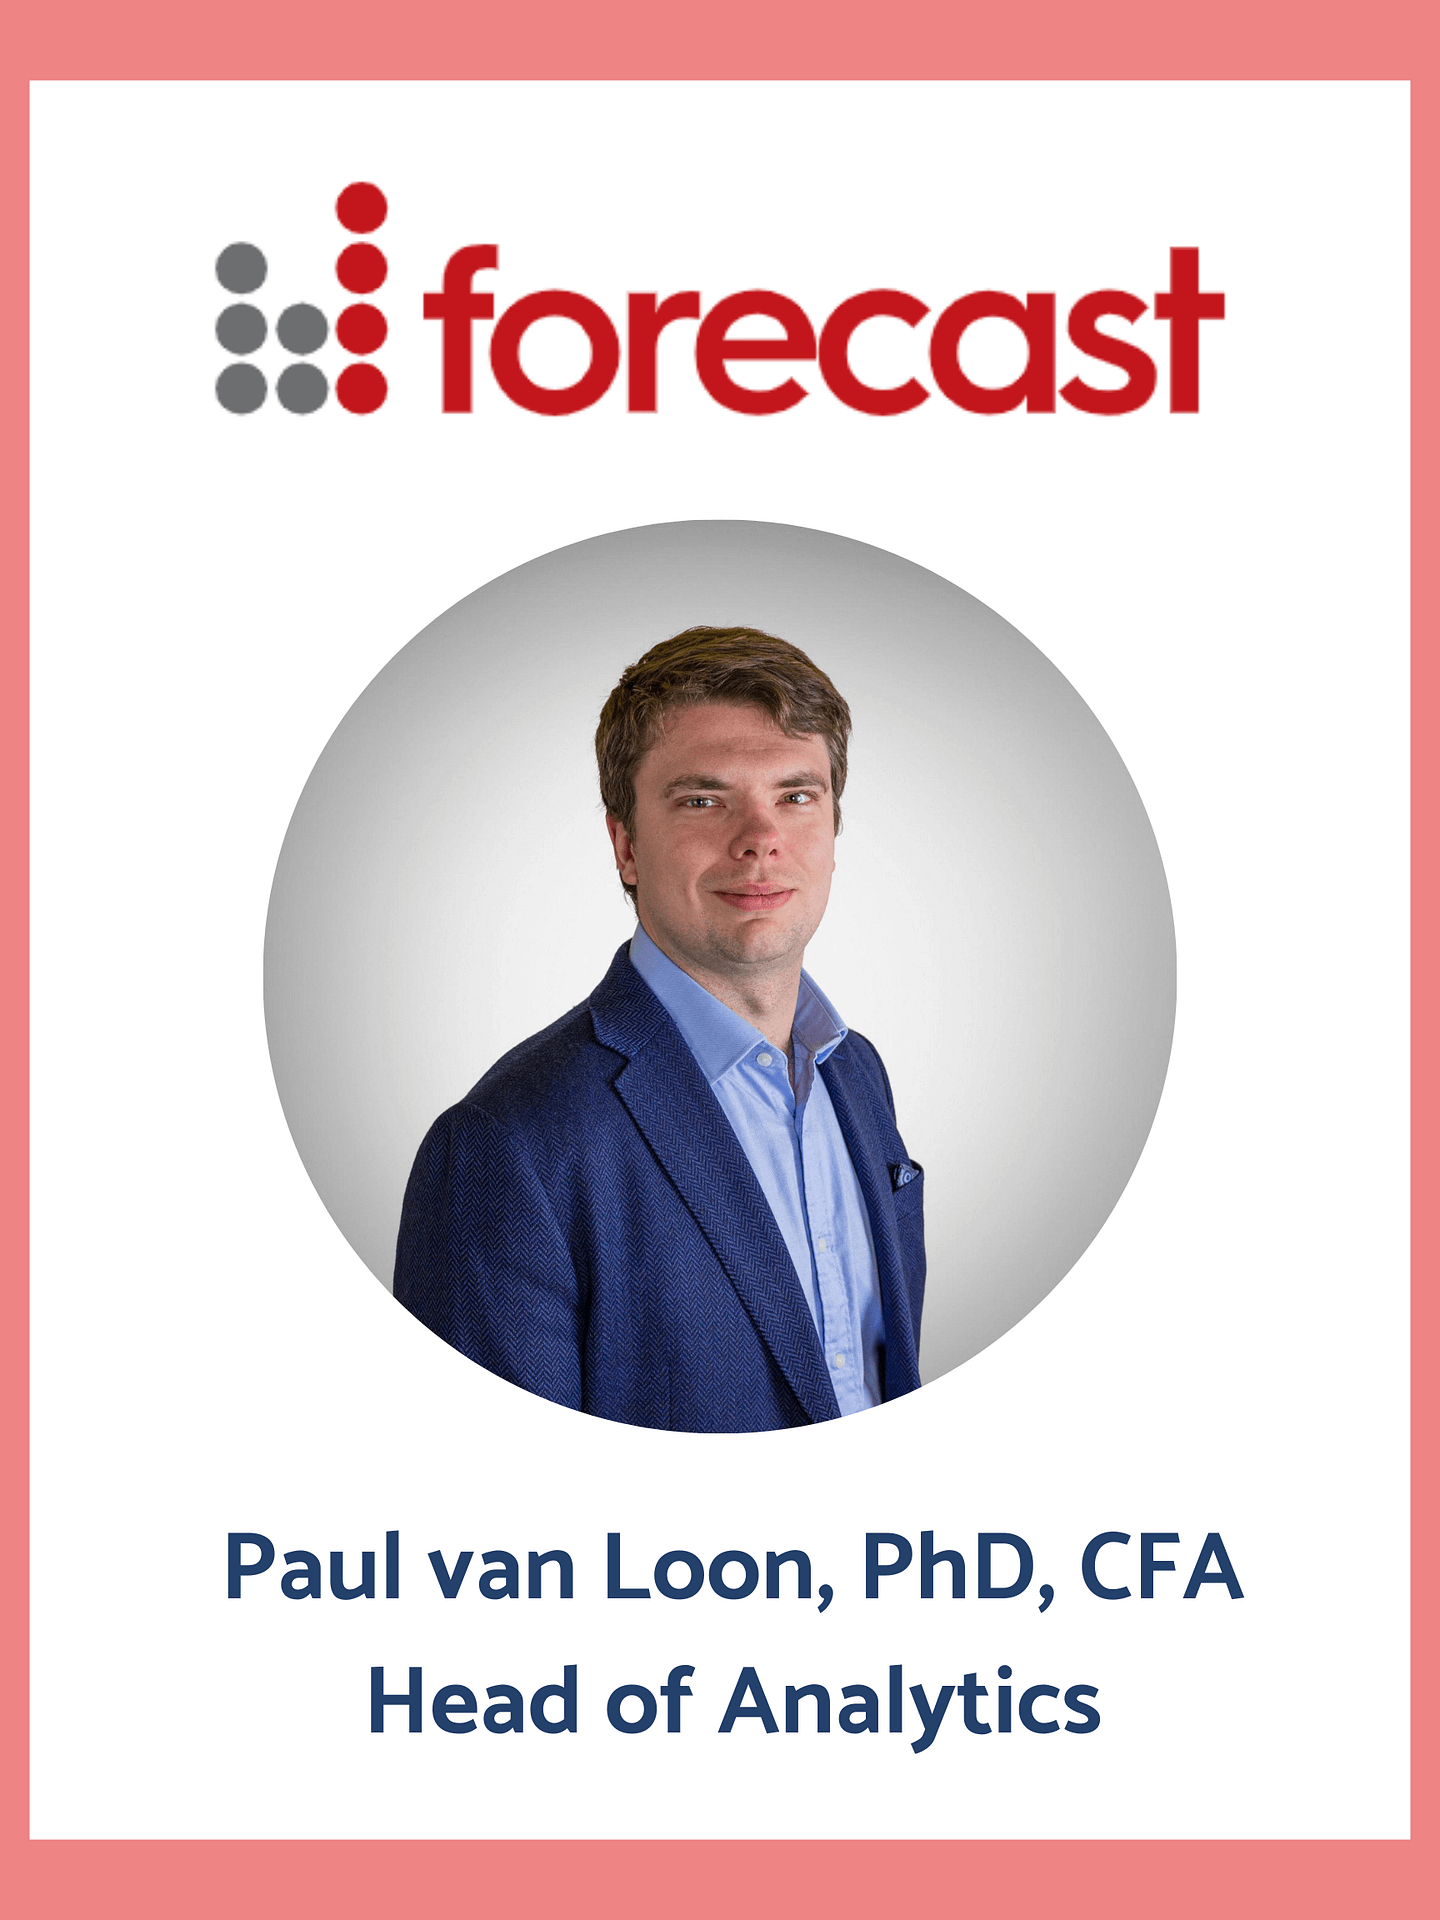 Paul van Loom from Forecast